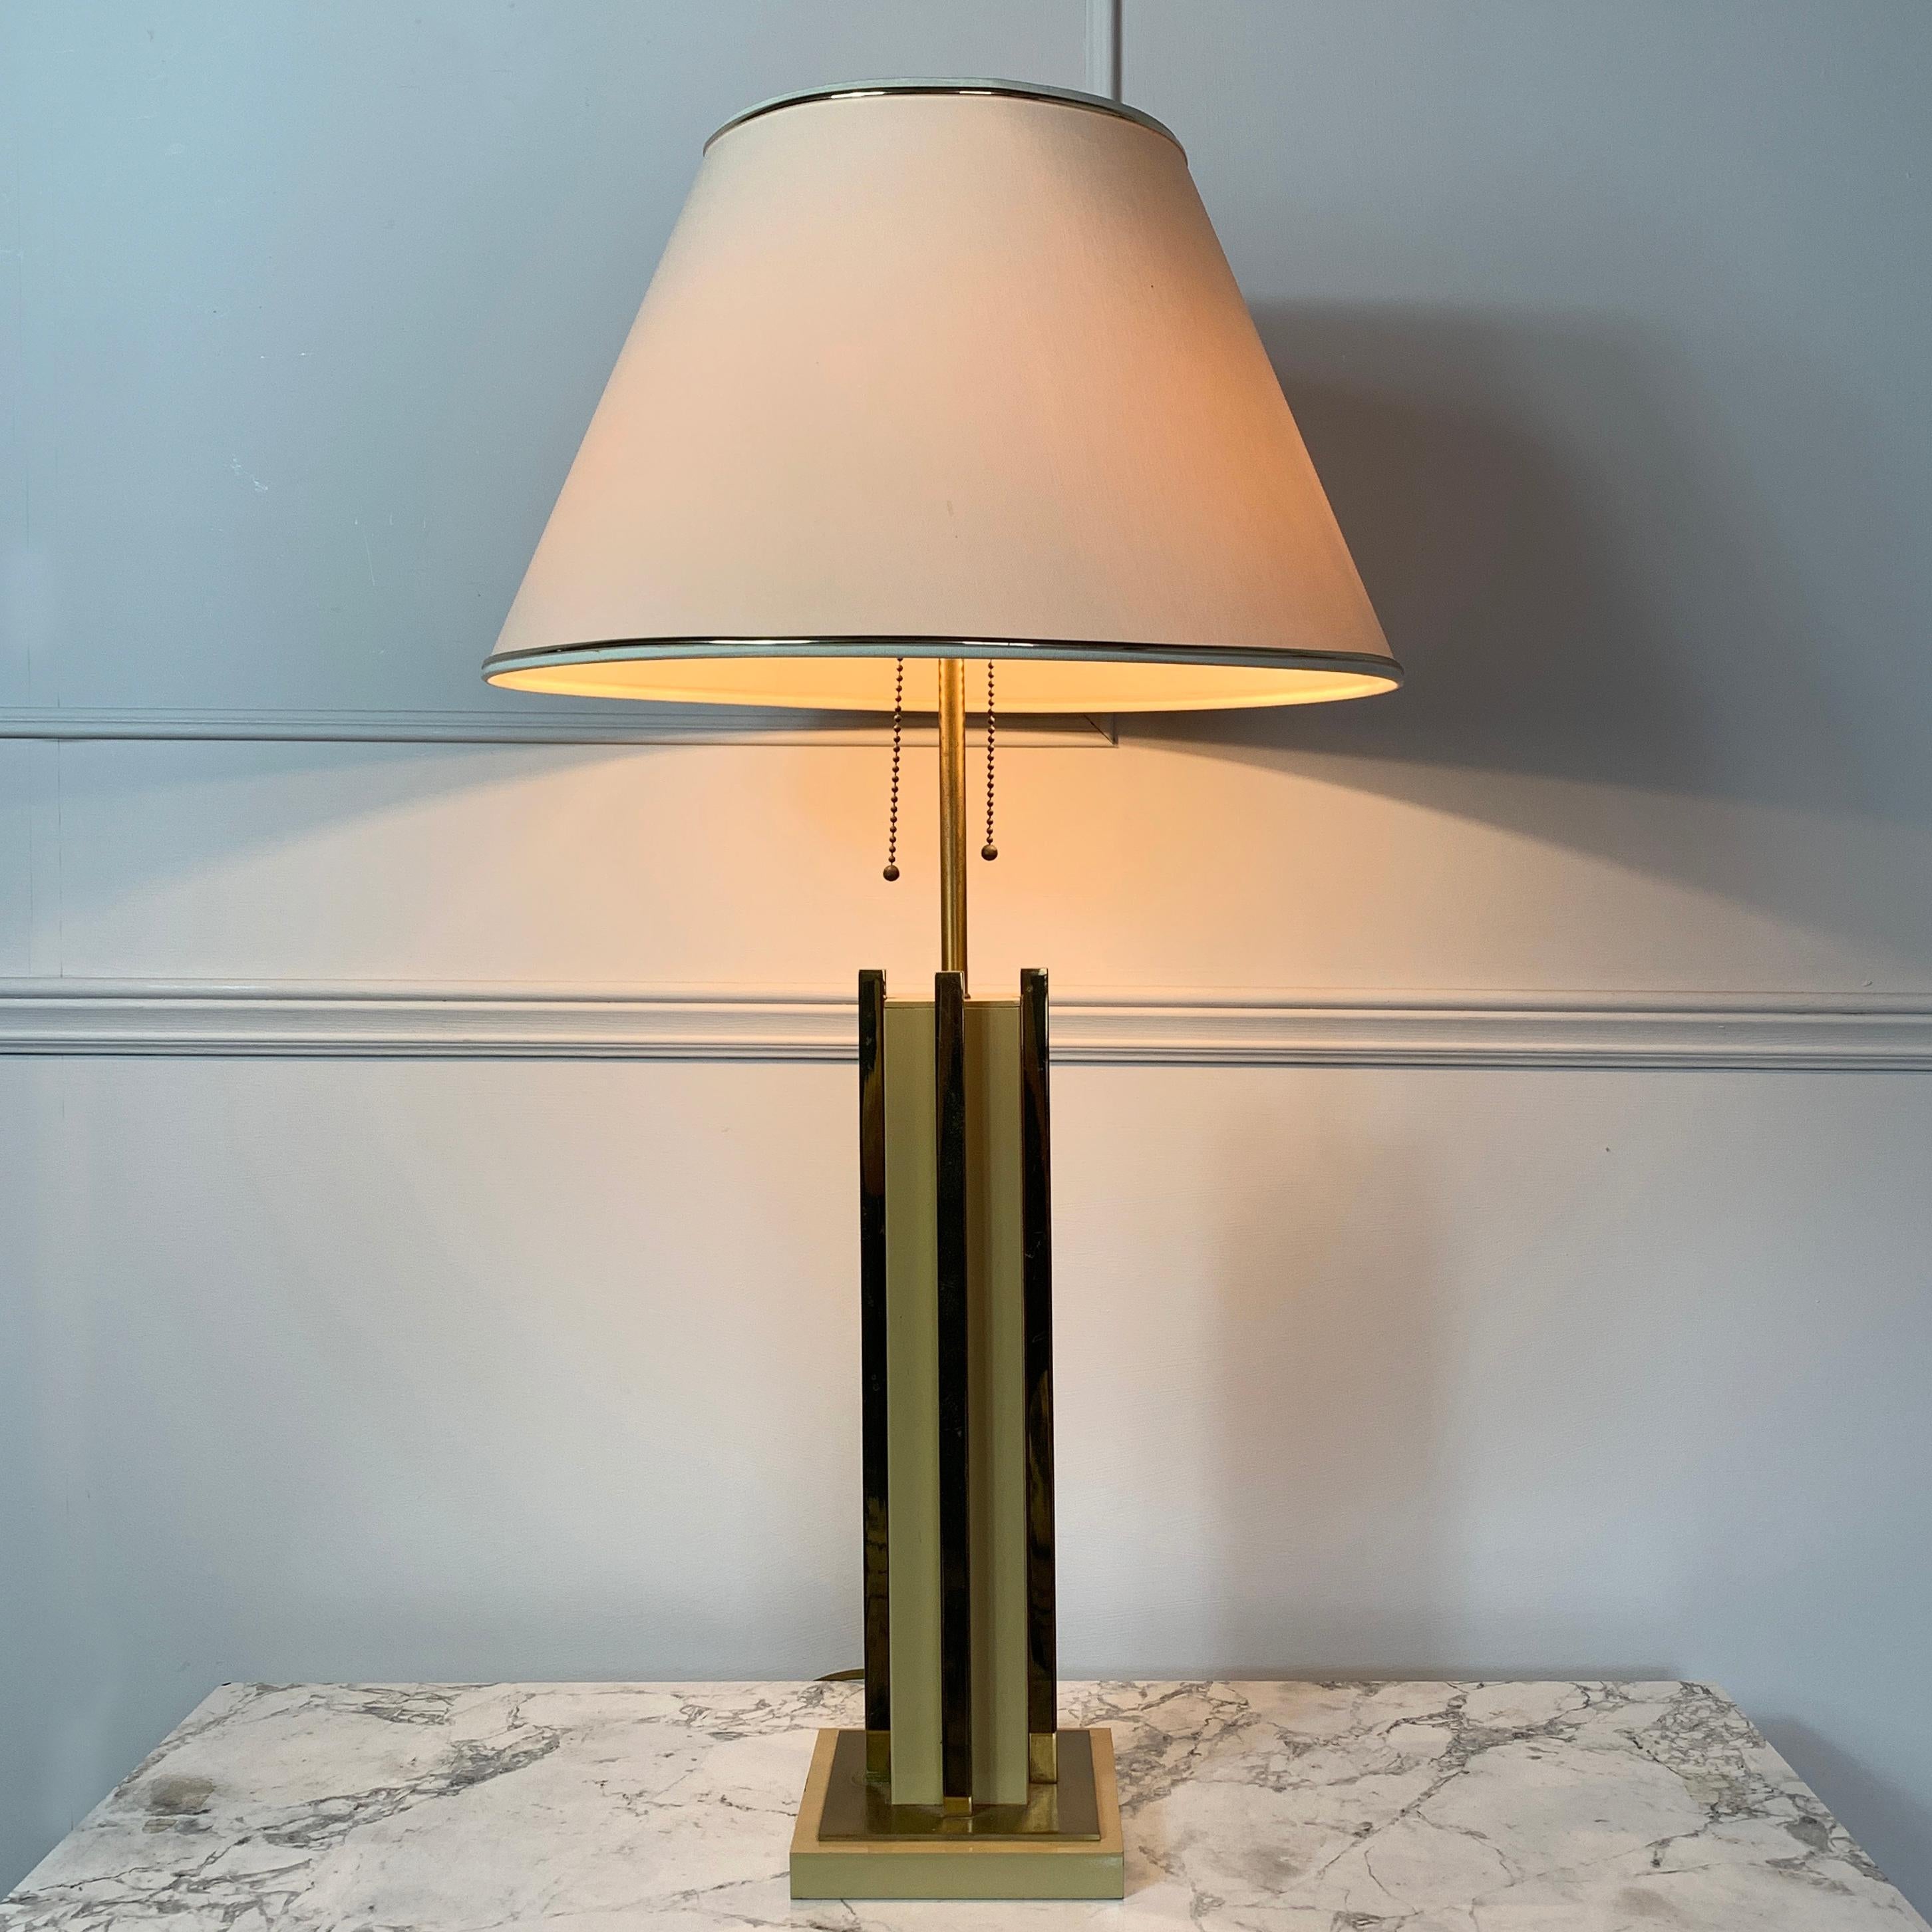 Lampe de table attribuée Willy Rizzo, 1970, Italie
La lampe est équipée de 2 douilles à vis E27, chacune étant dotée d'une chaîne à tirettes permettant de l'allumer et de l'éteindre de manière indépendante.
Caramel doux et laiton
Cette lampe est